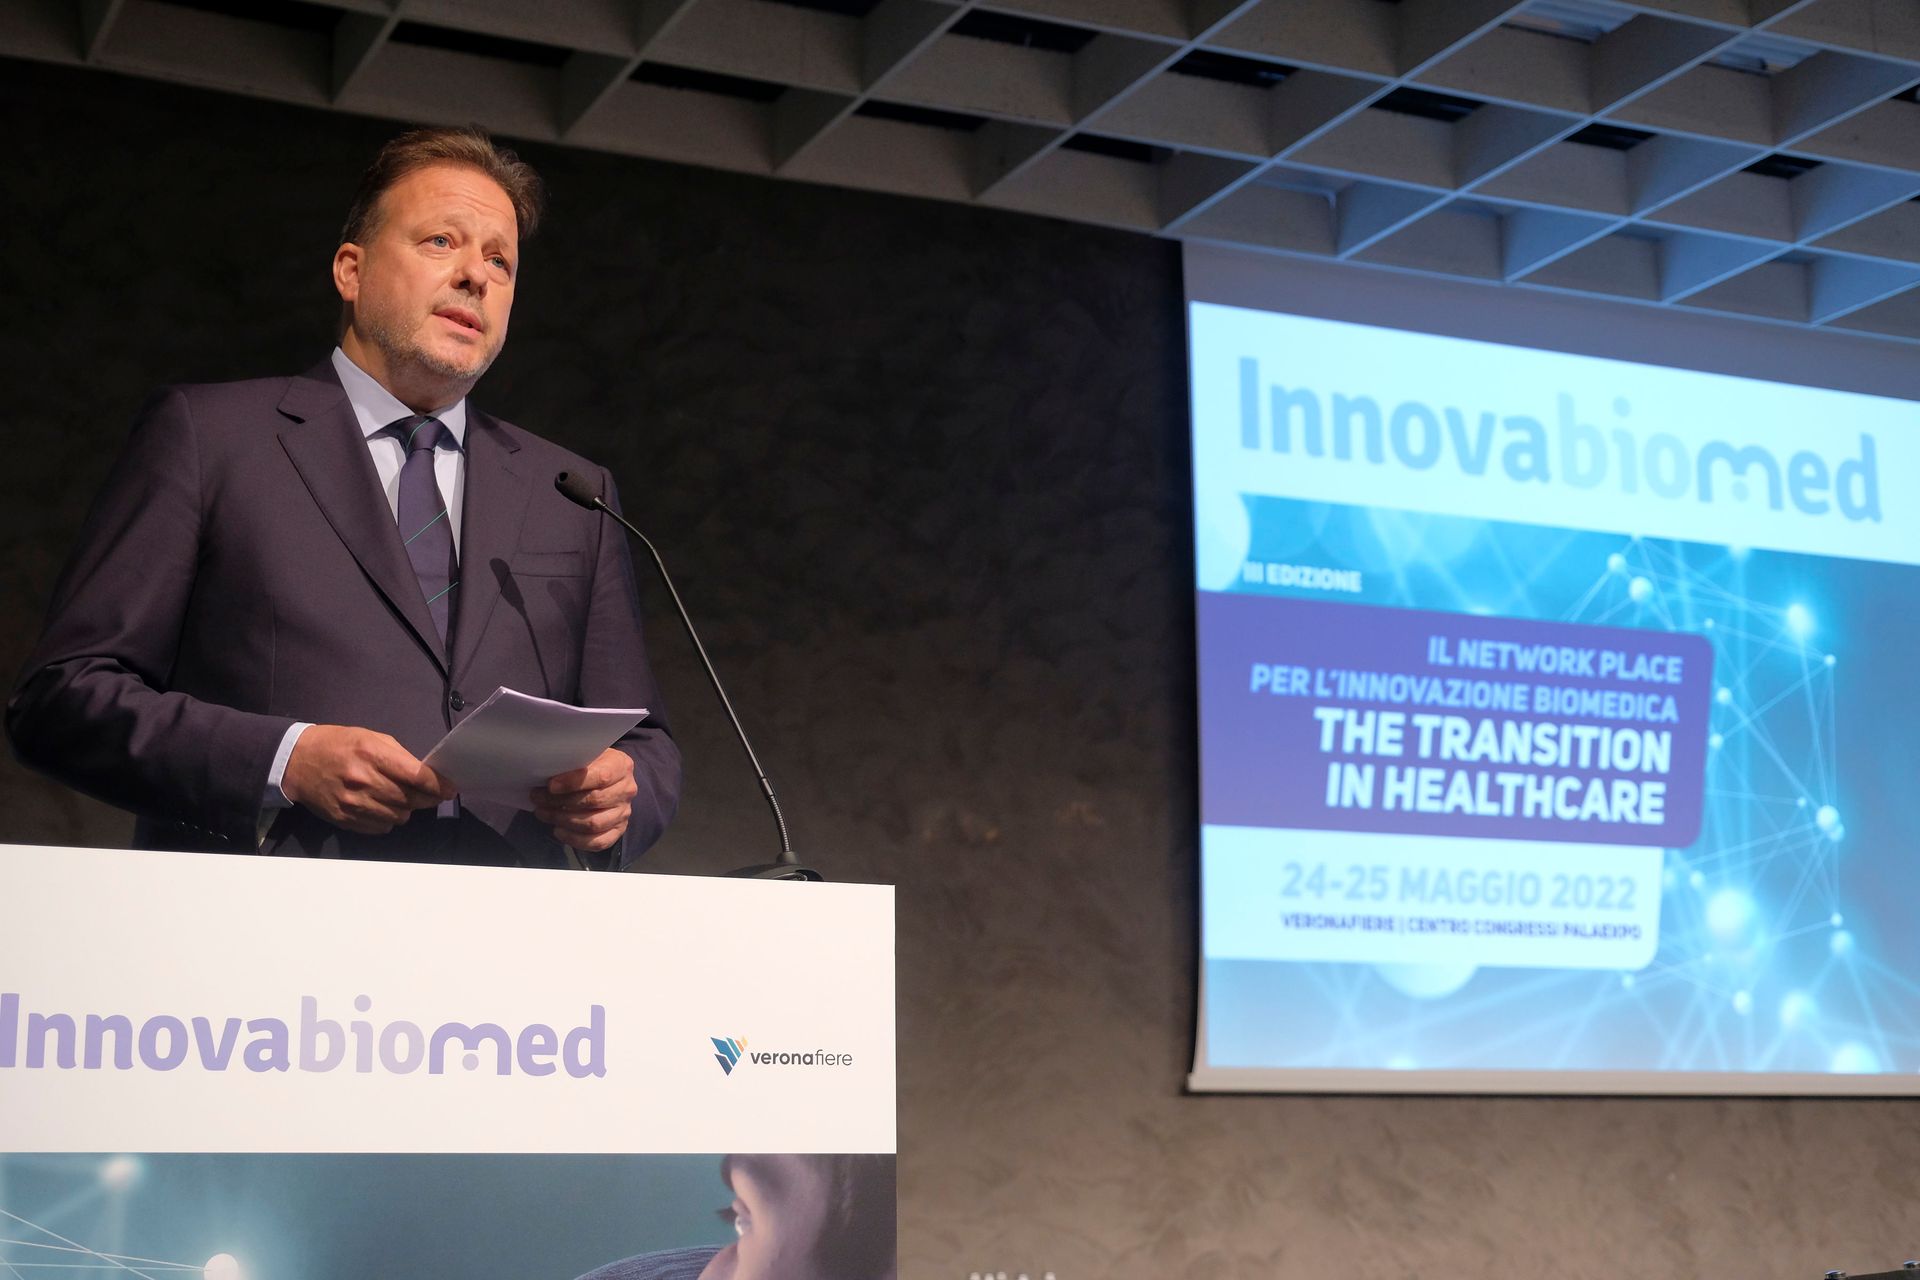 Federico Bricolo all'inaugurazione del network e formation place "Innovabiomed" al Palaexpo di Verona il 24 maggio 2022